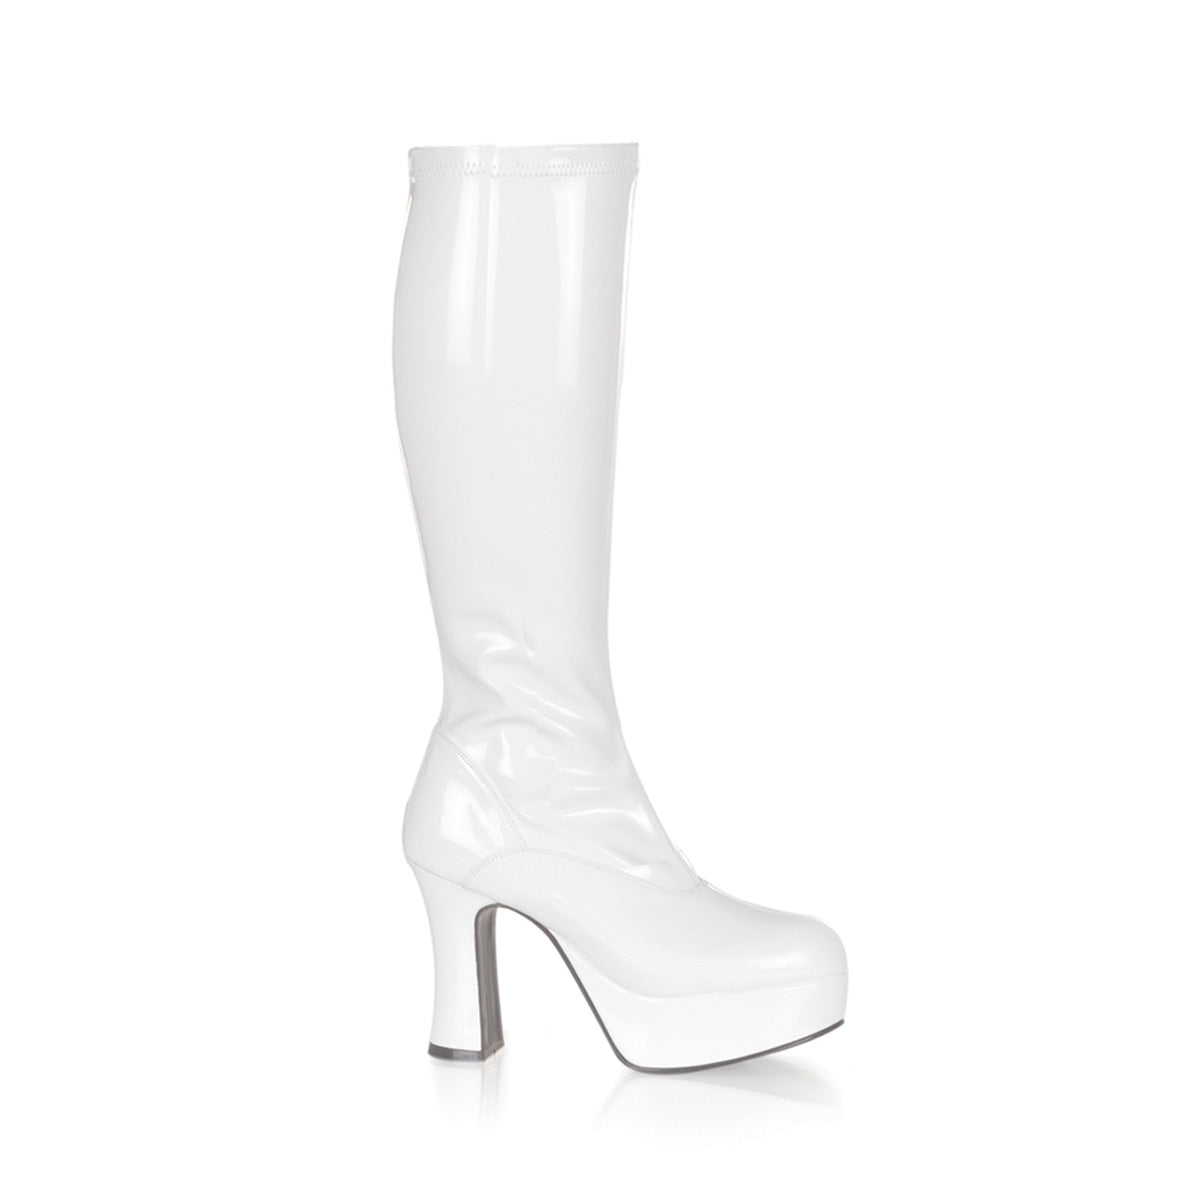 Exotica-2000 funtasma 4 inch hak witte octrooi vrouwen laarzen